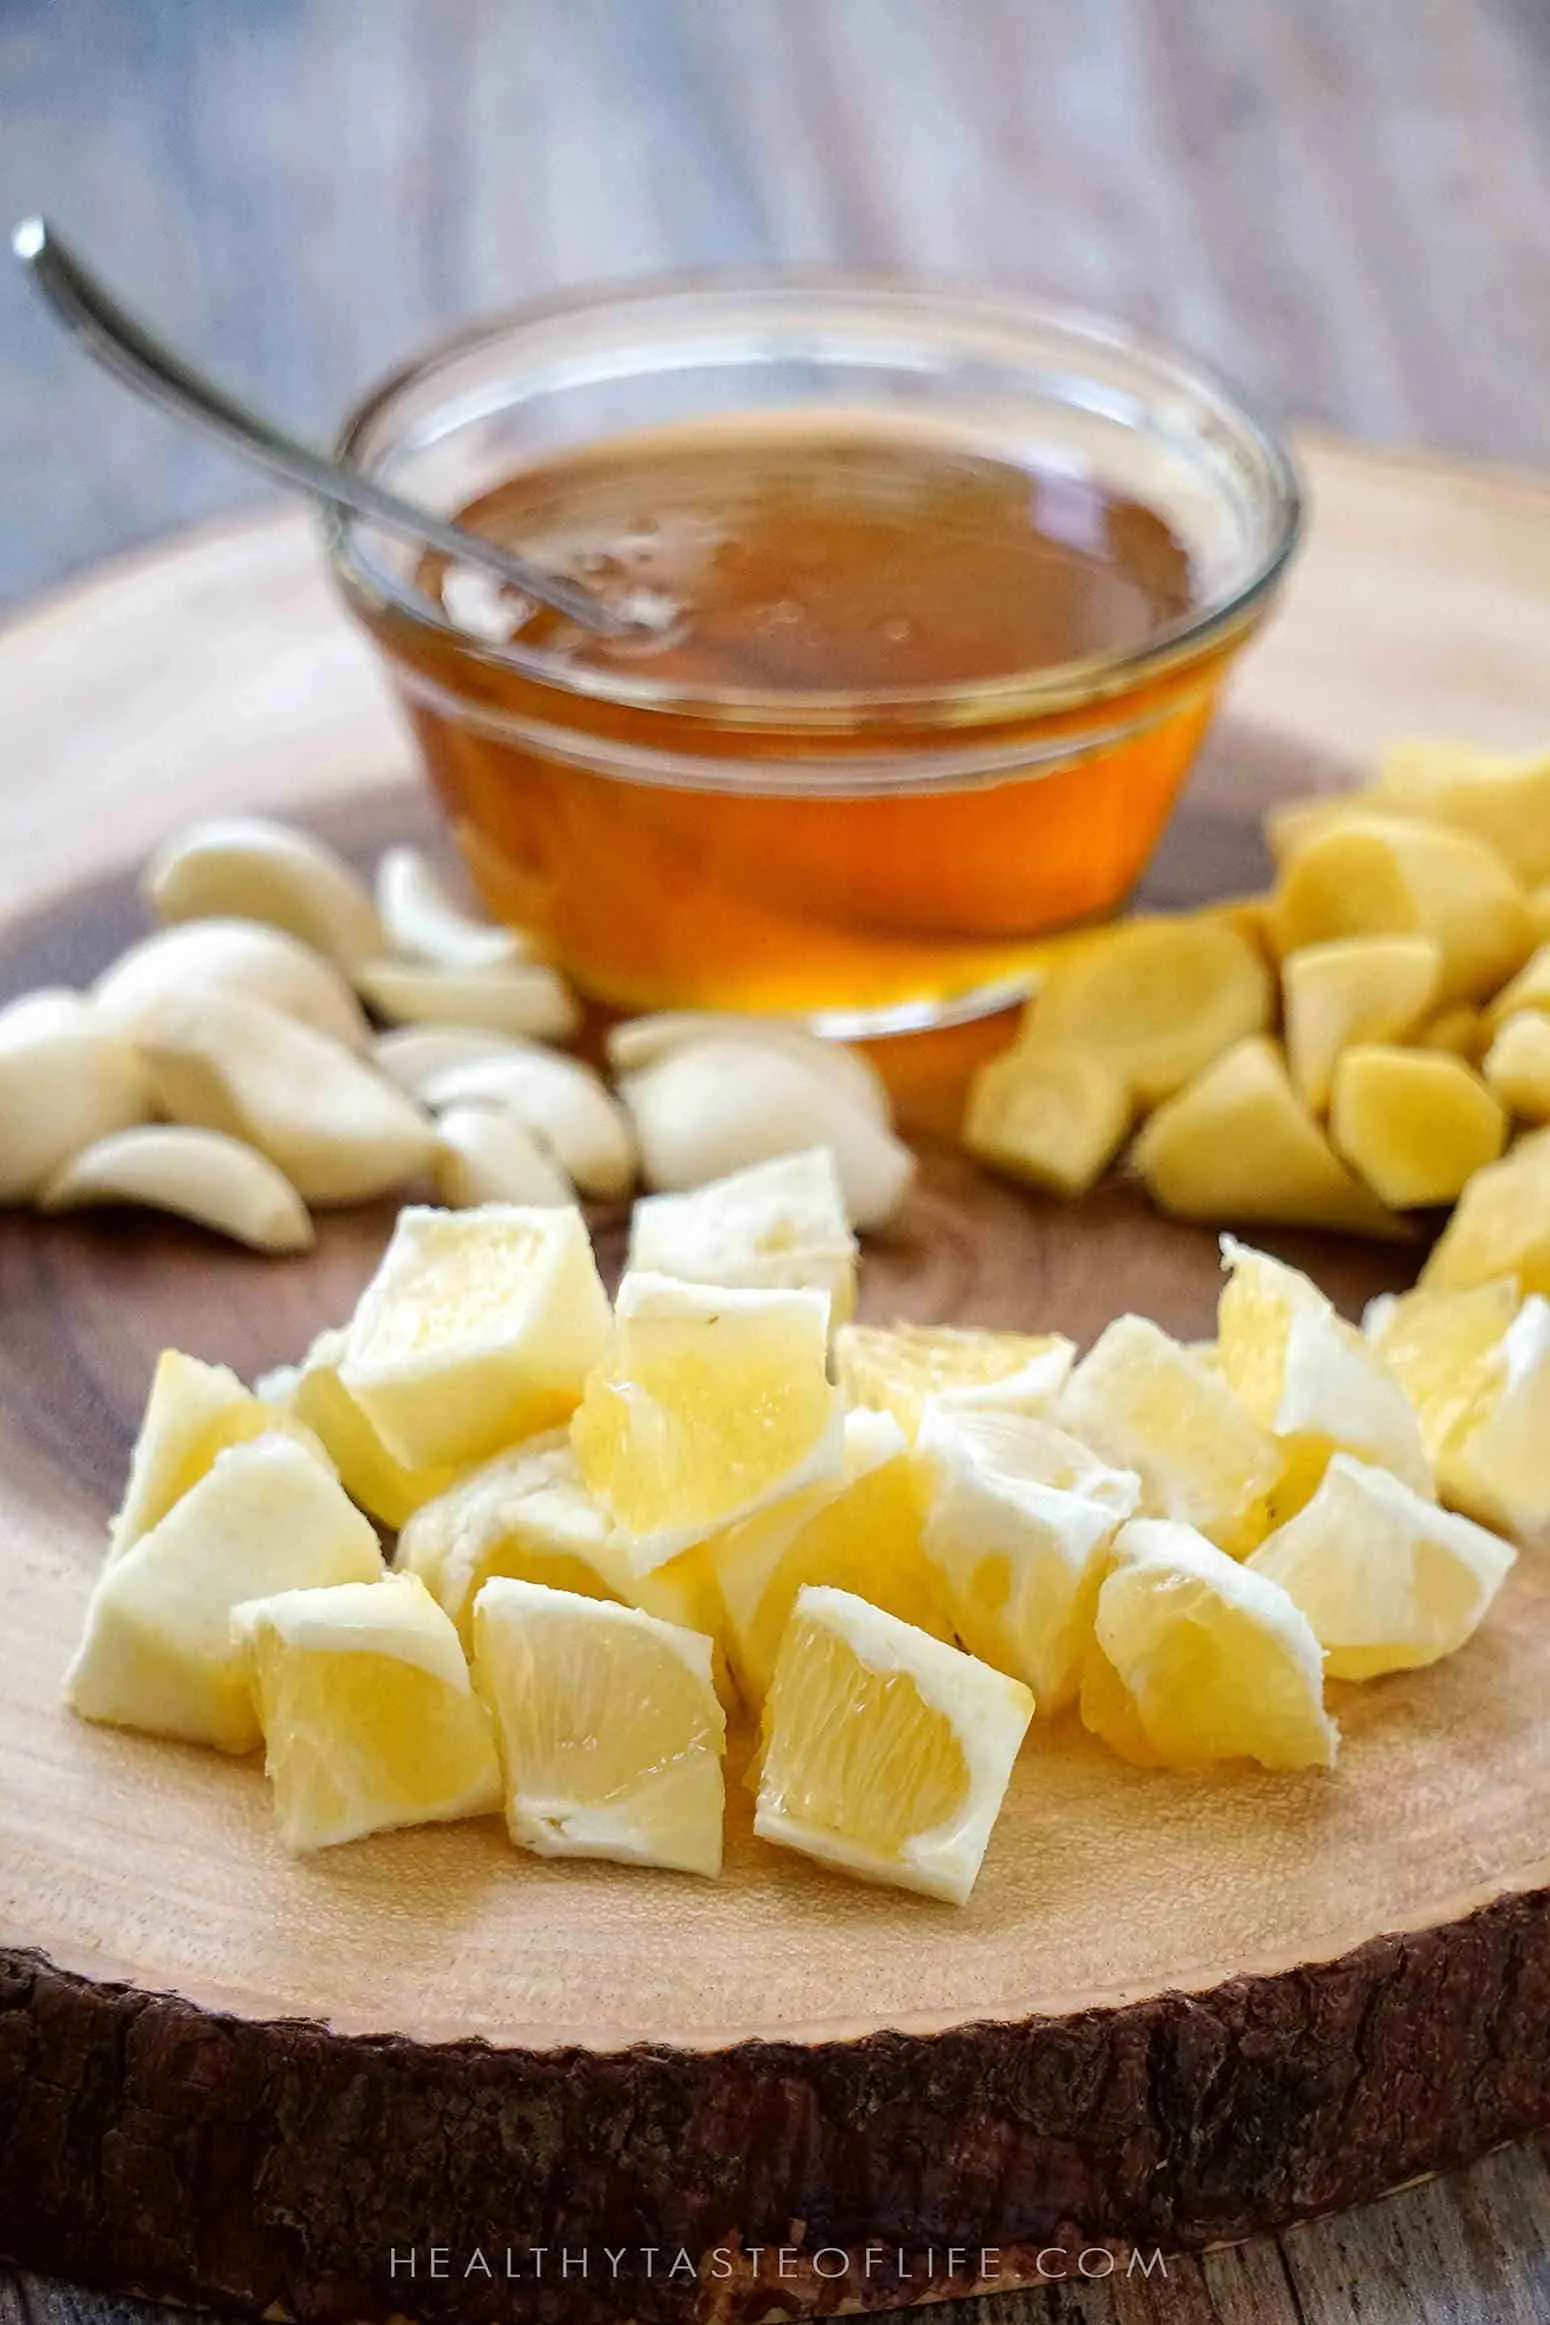 Ingredients for this Immune boosting tonic recipe: honey, lemon, ginger, garlic.